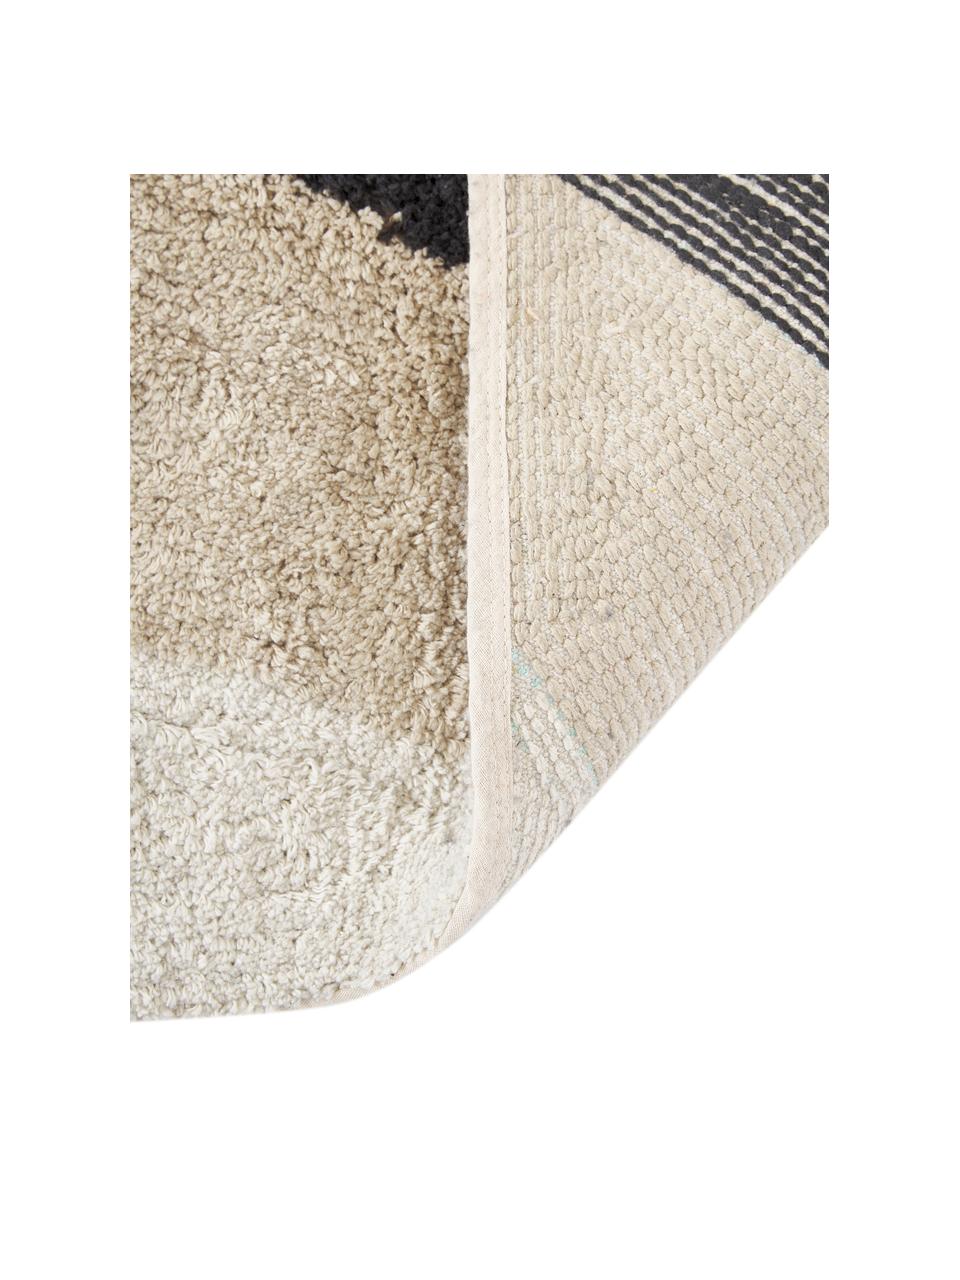 Alfombrilla de baño de algodón ecológico Belinda, 100% algodón ecológico con certificado BCI, Negro, beige, blanco crudo, gris, An 50 x L 80 cm